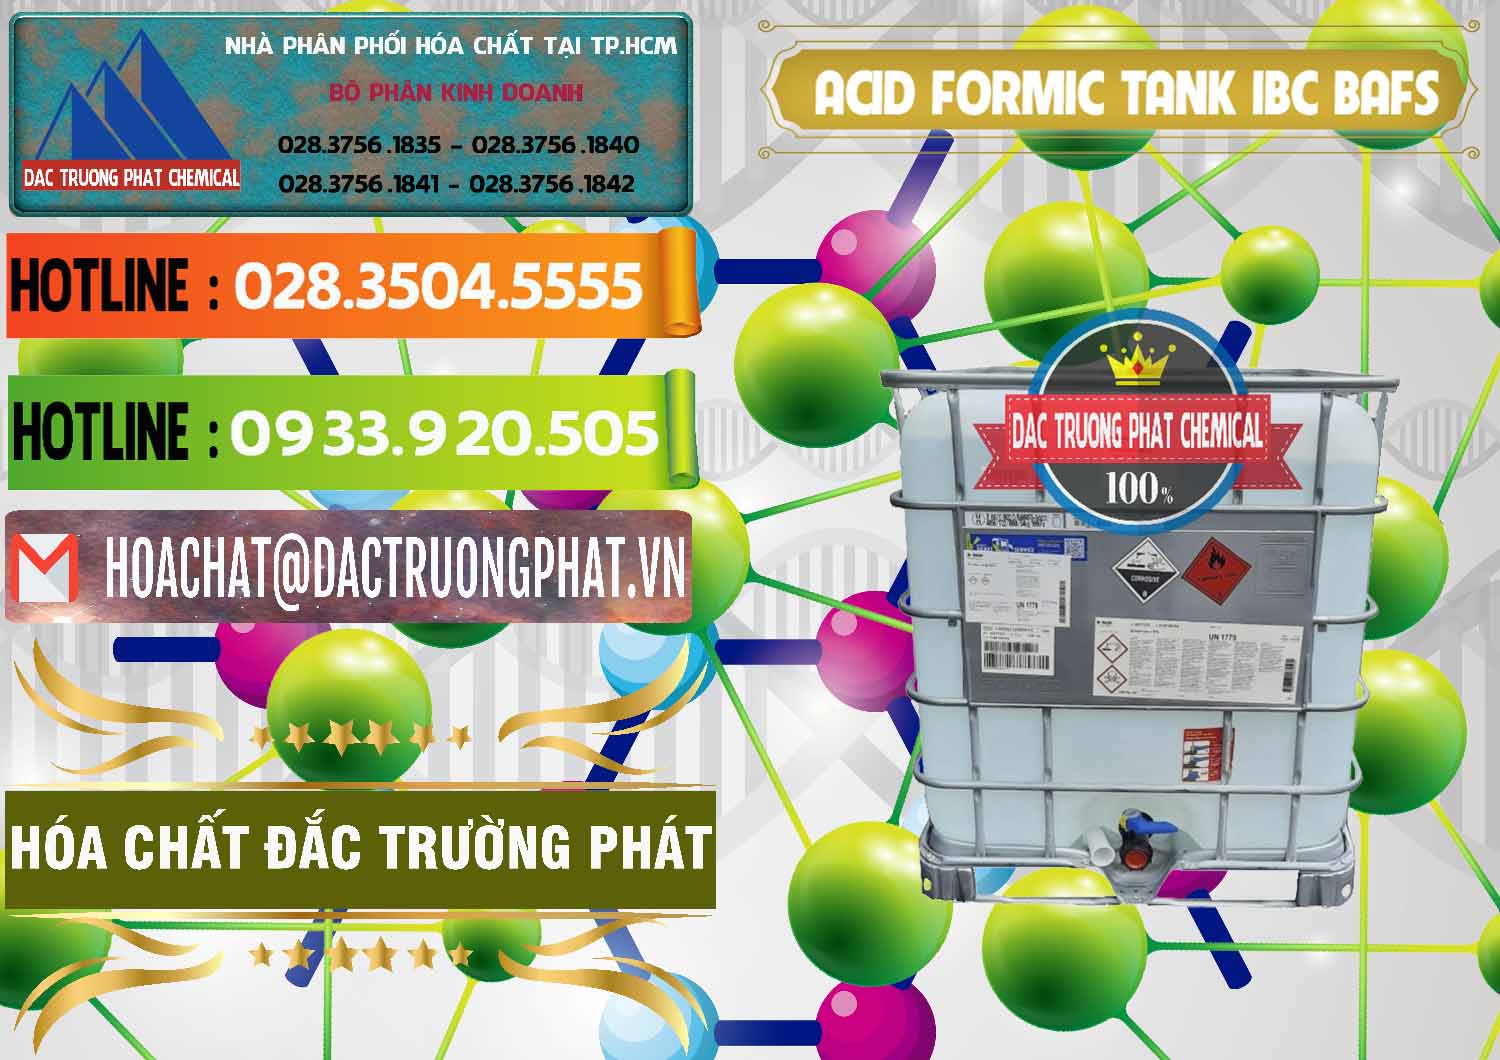 Phân phối và bán Acid Formic - Axit Formic Tank - Bồn IBC BASF Đức - 0366 - Nơi phân phối _ cung cấp hóa chất tại TP.HCM - cungcaphoachat.com.vn